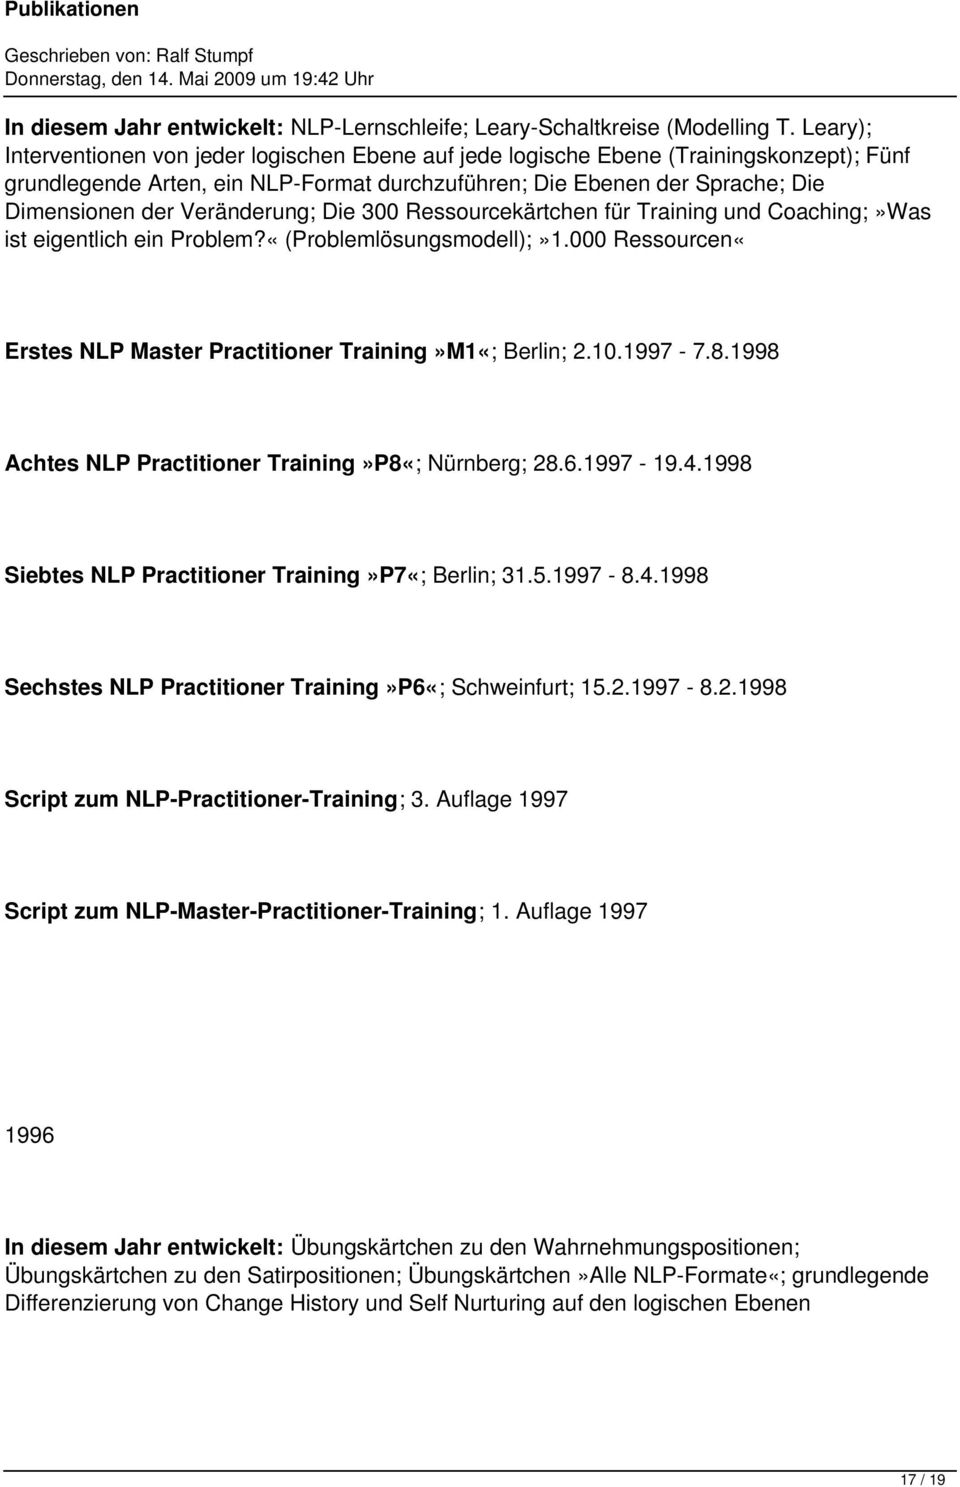 Veränderung; Die 300 Ressourcekärtchen für Training und Coaching;»Was ist eigentlich ein Problem?«(Problemlösungsmodell);»1.000 Ressourcen«Erstes NLP Master Practitioner Training»M1«; Berlin; 2.10.